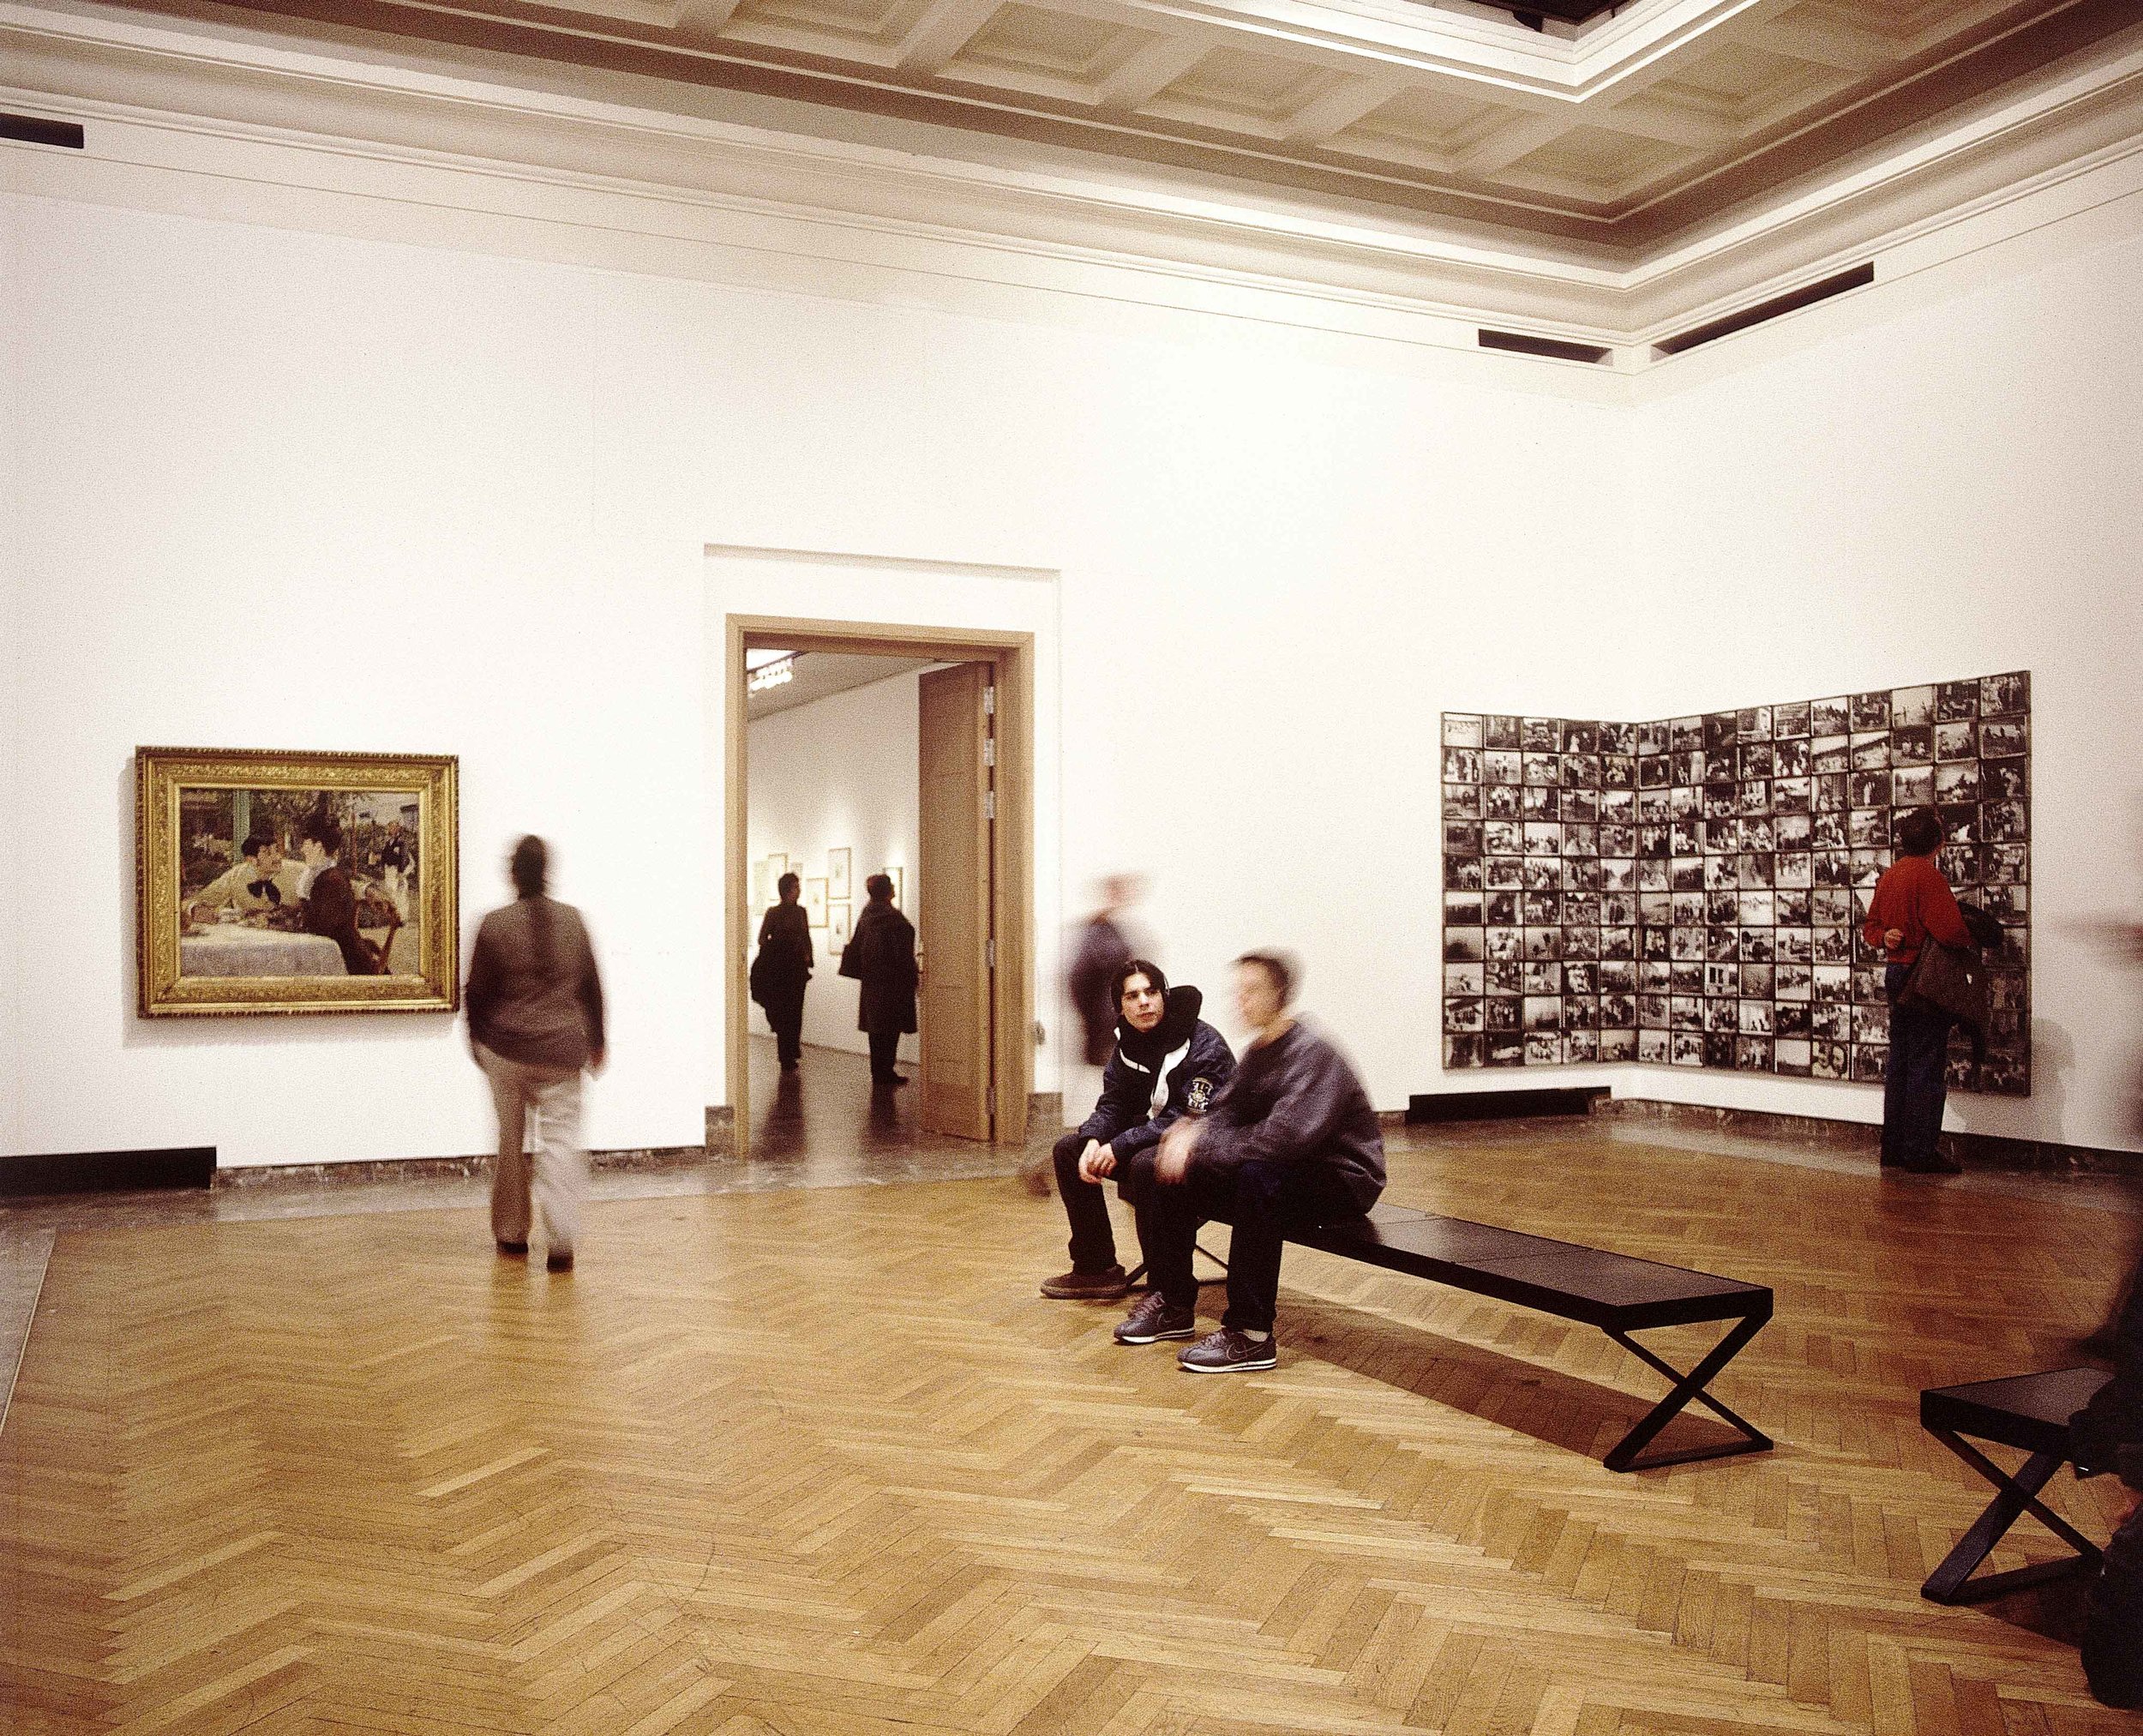   Nous voici, In-Common : Works by Manet, Janssens, Boltanski. Photo Philippe De Gobert. 